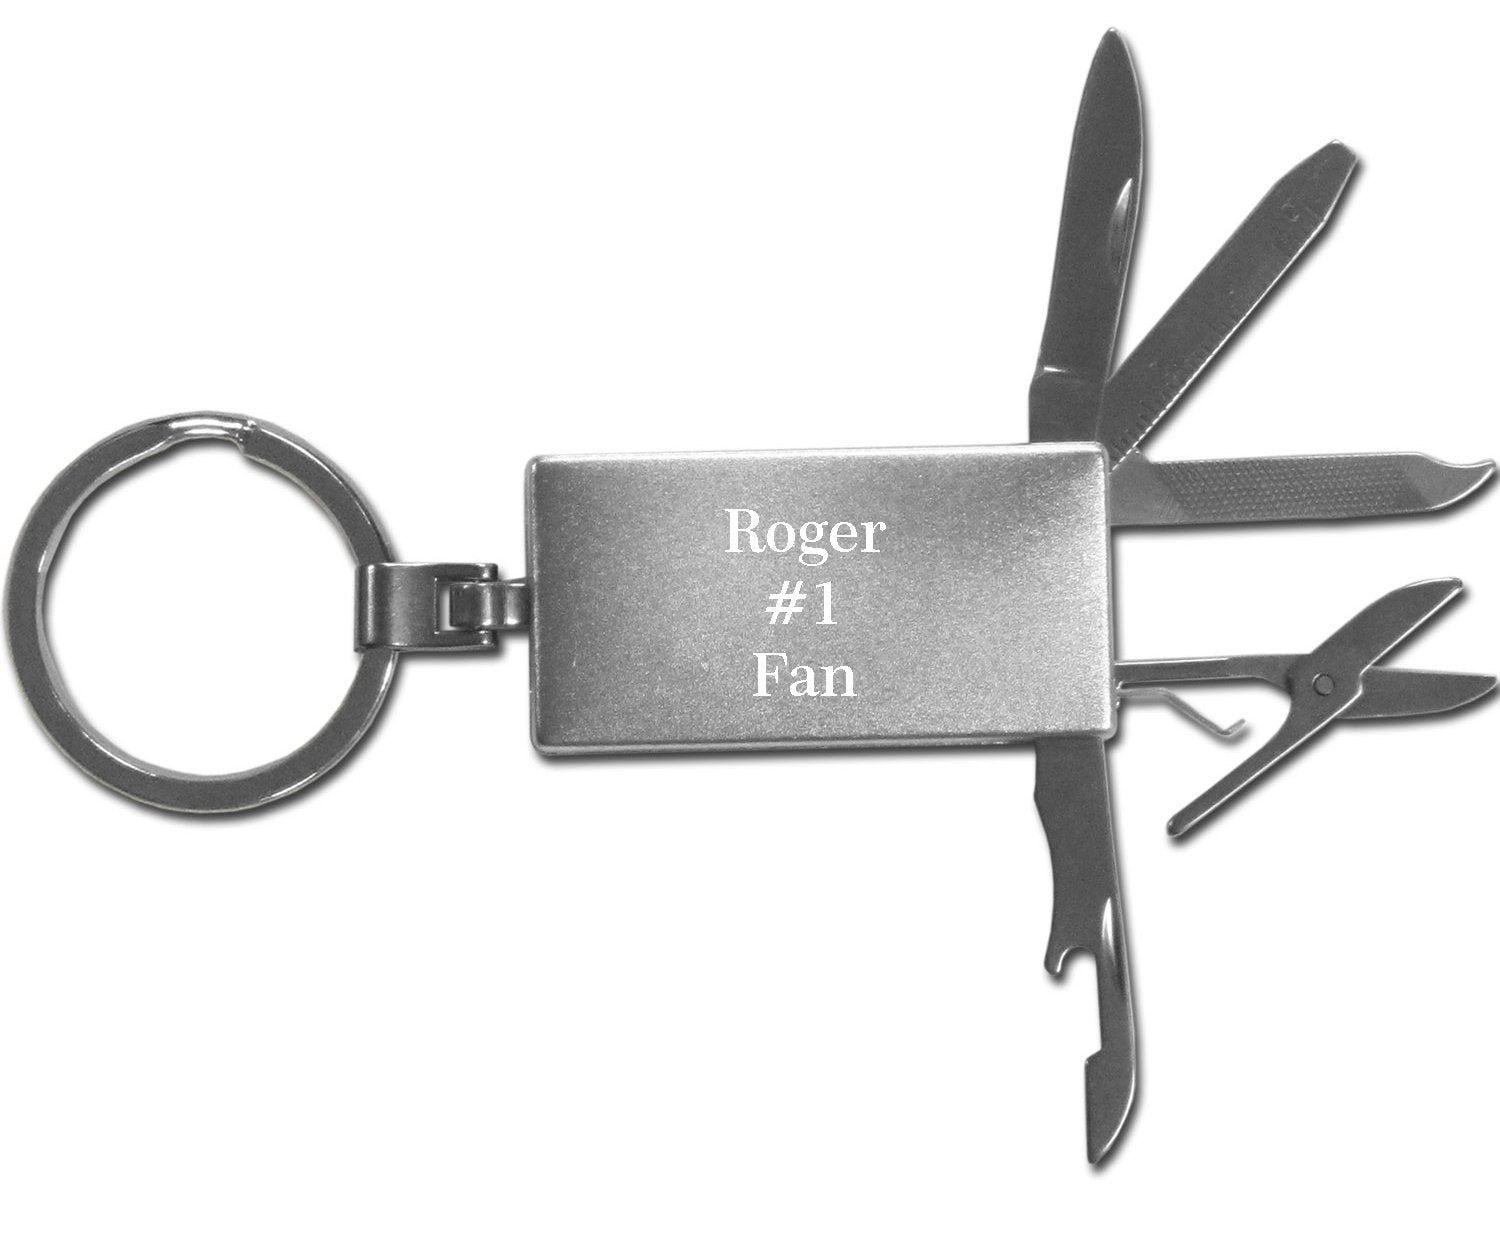 Dallas Cowboys Multi-tool Key Chain